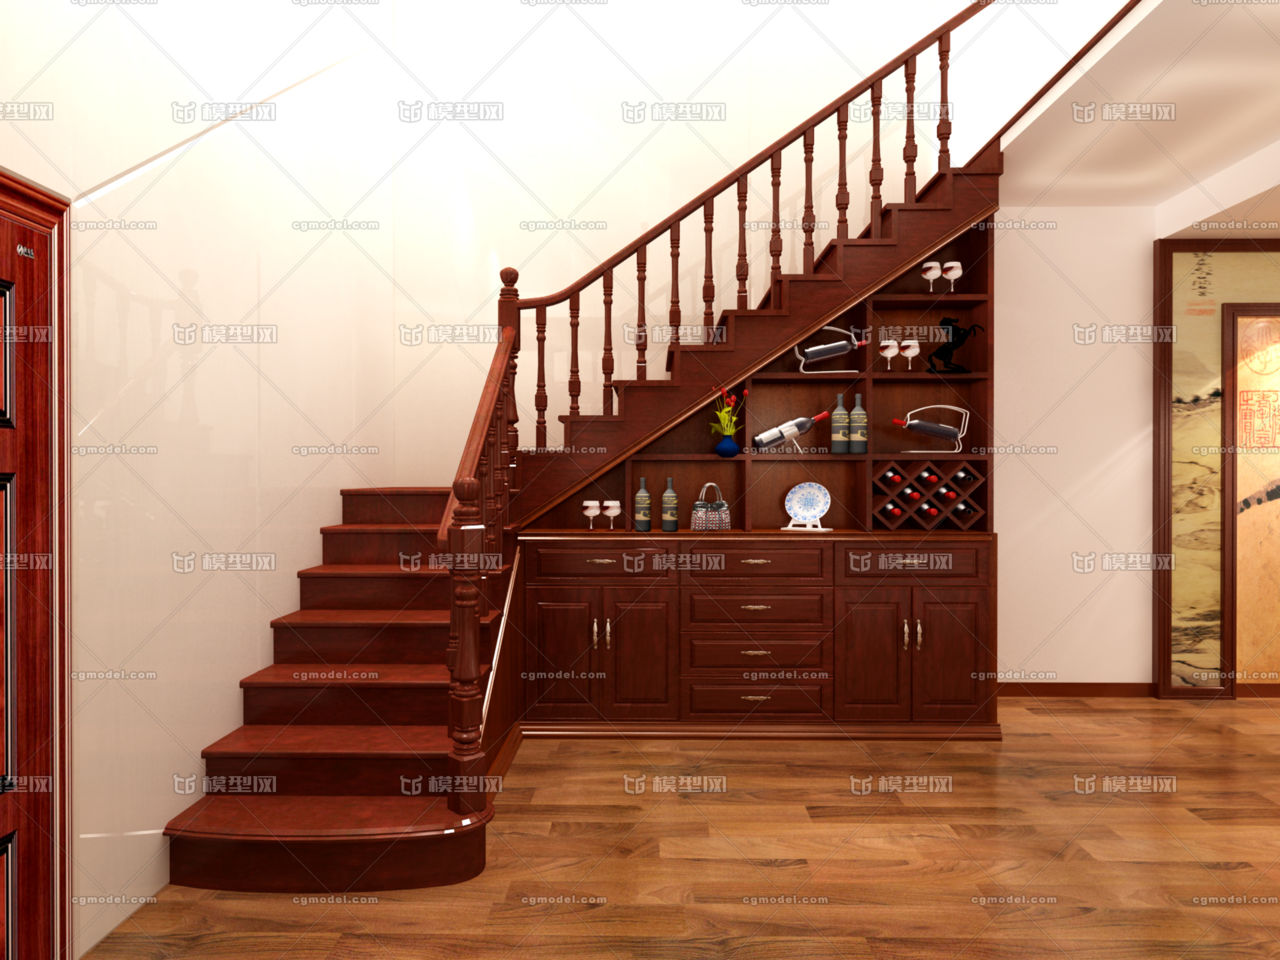 中式实木楼梯,酒柜,楼梯间,实木地板